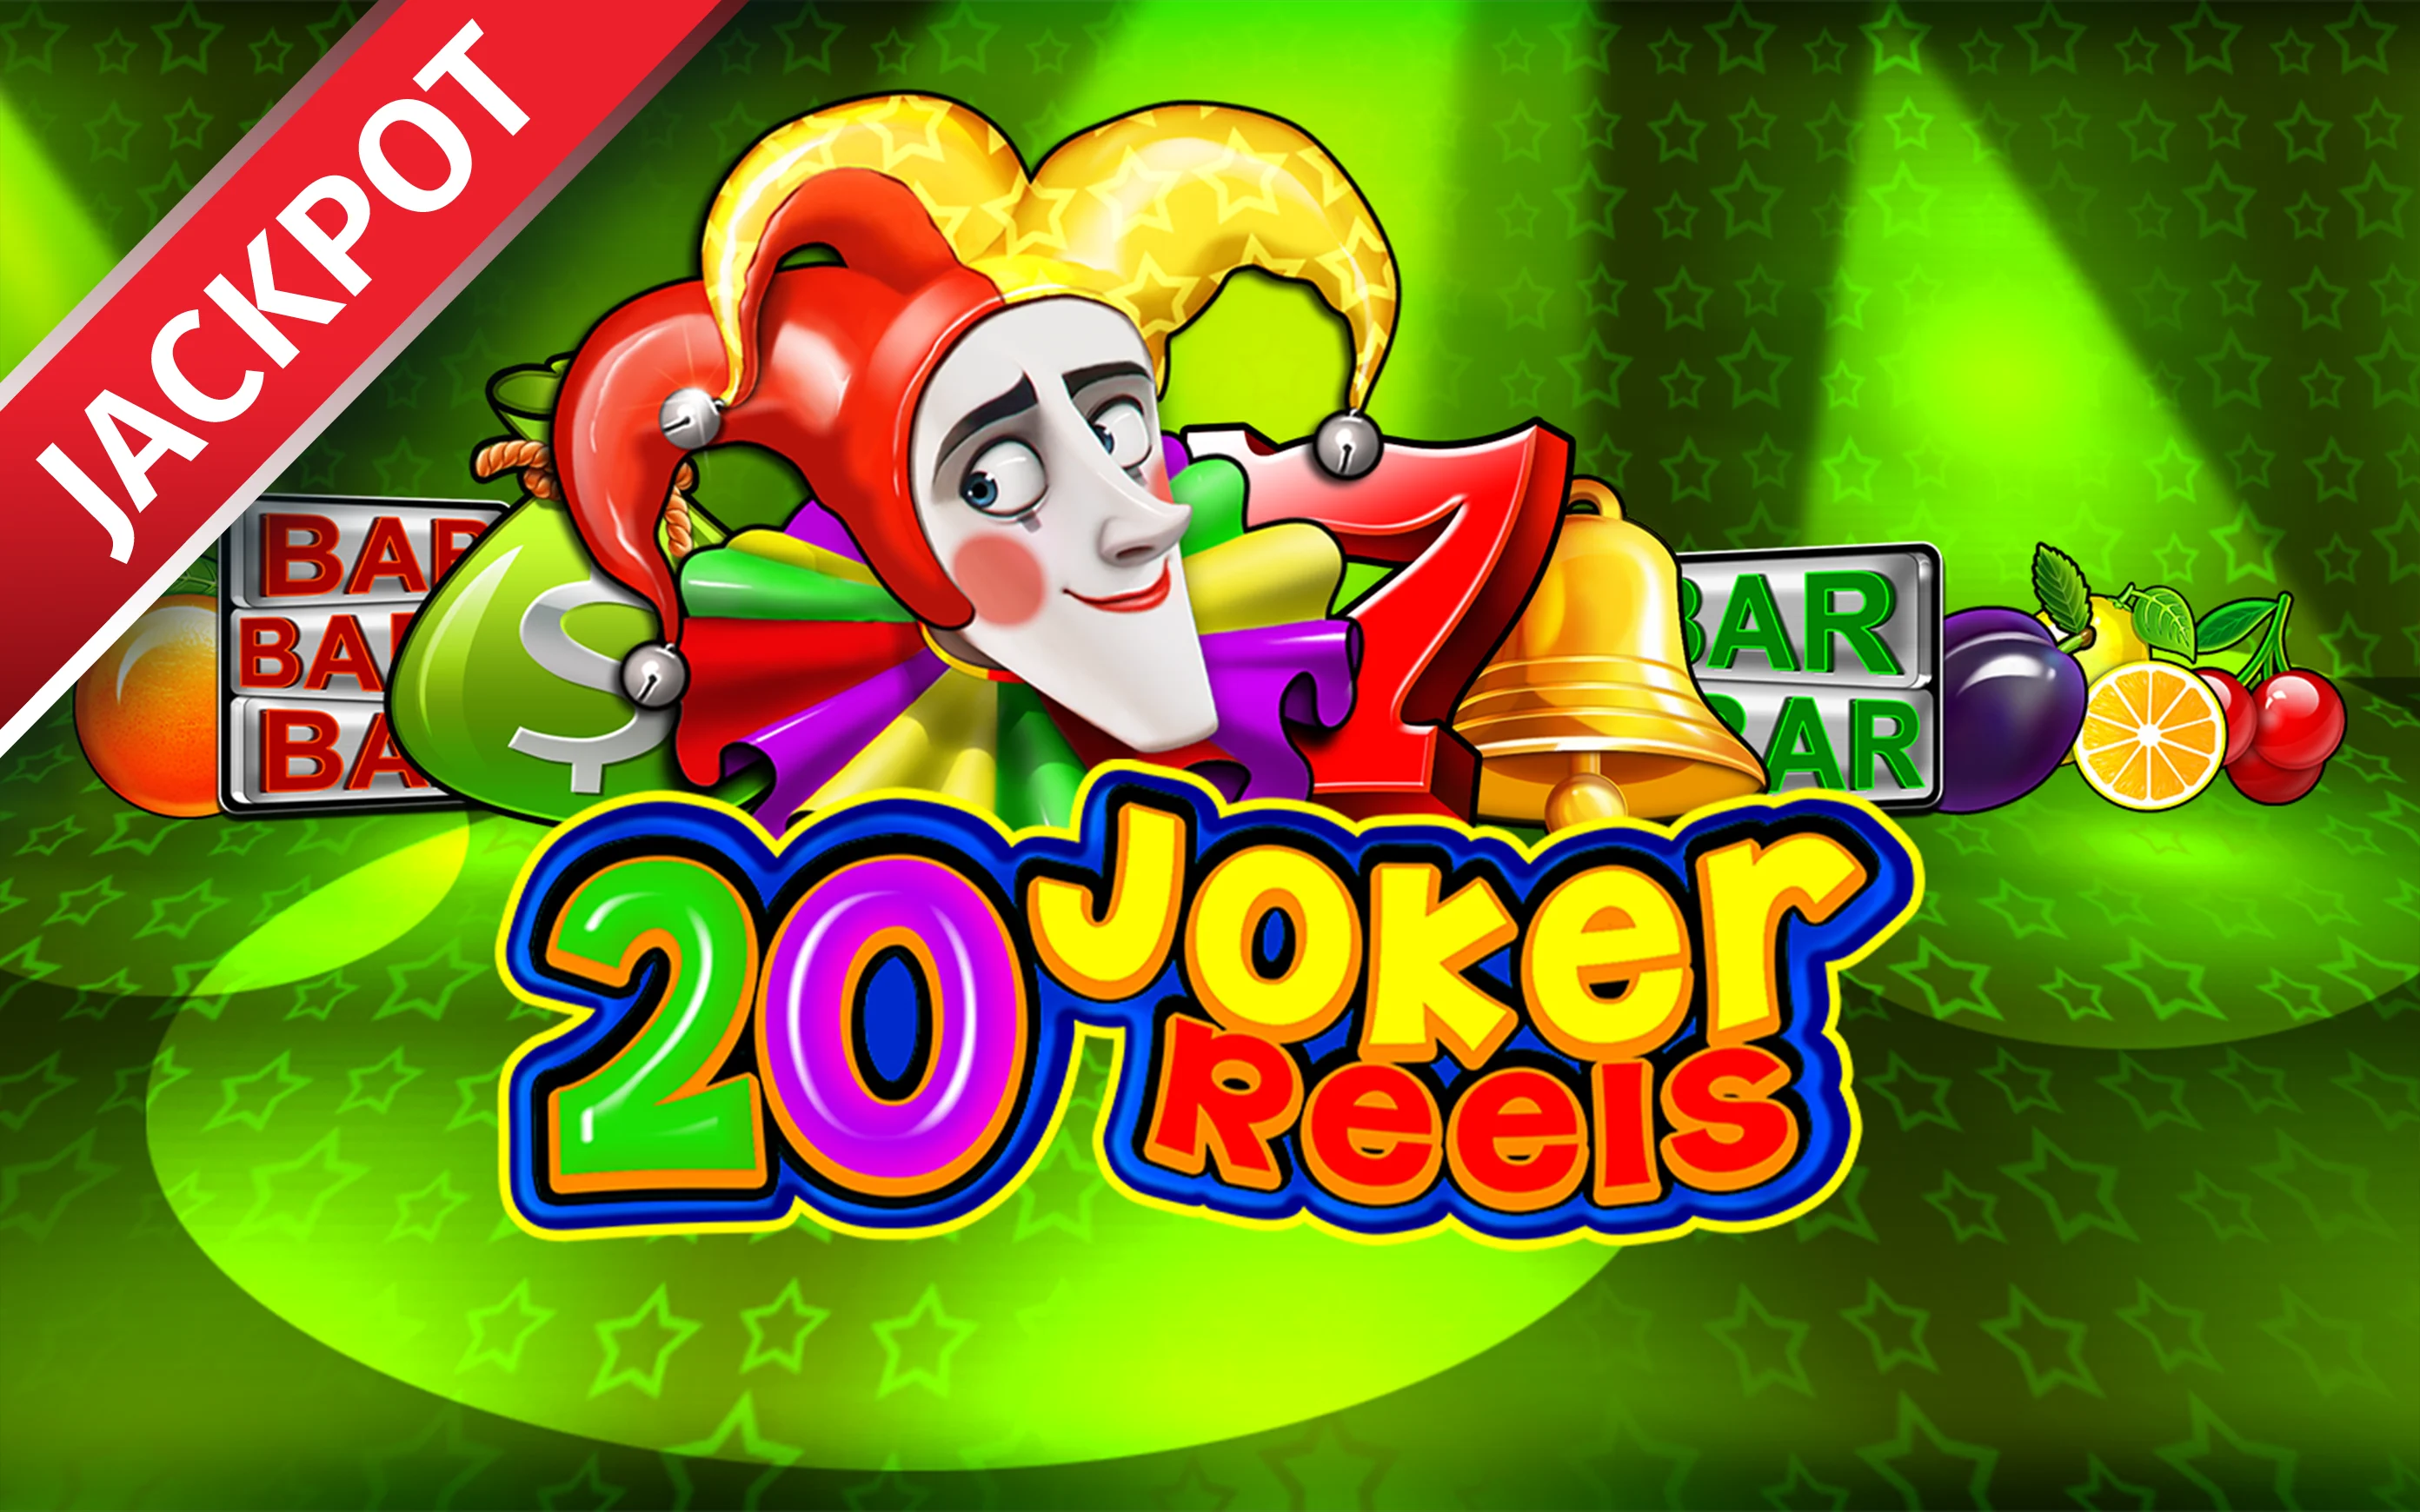 Jouer à 20 Joker Reels sur le casino en ligne Starcasino.be